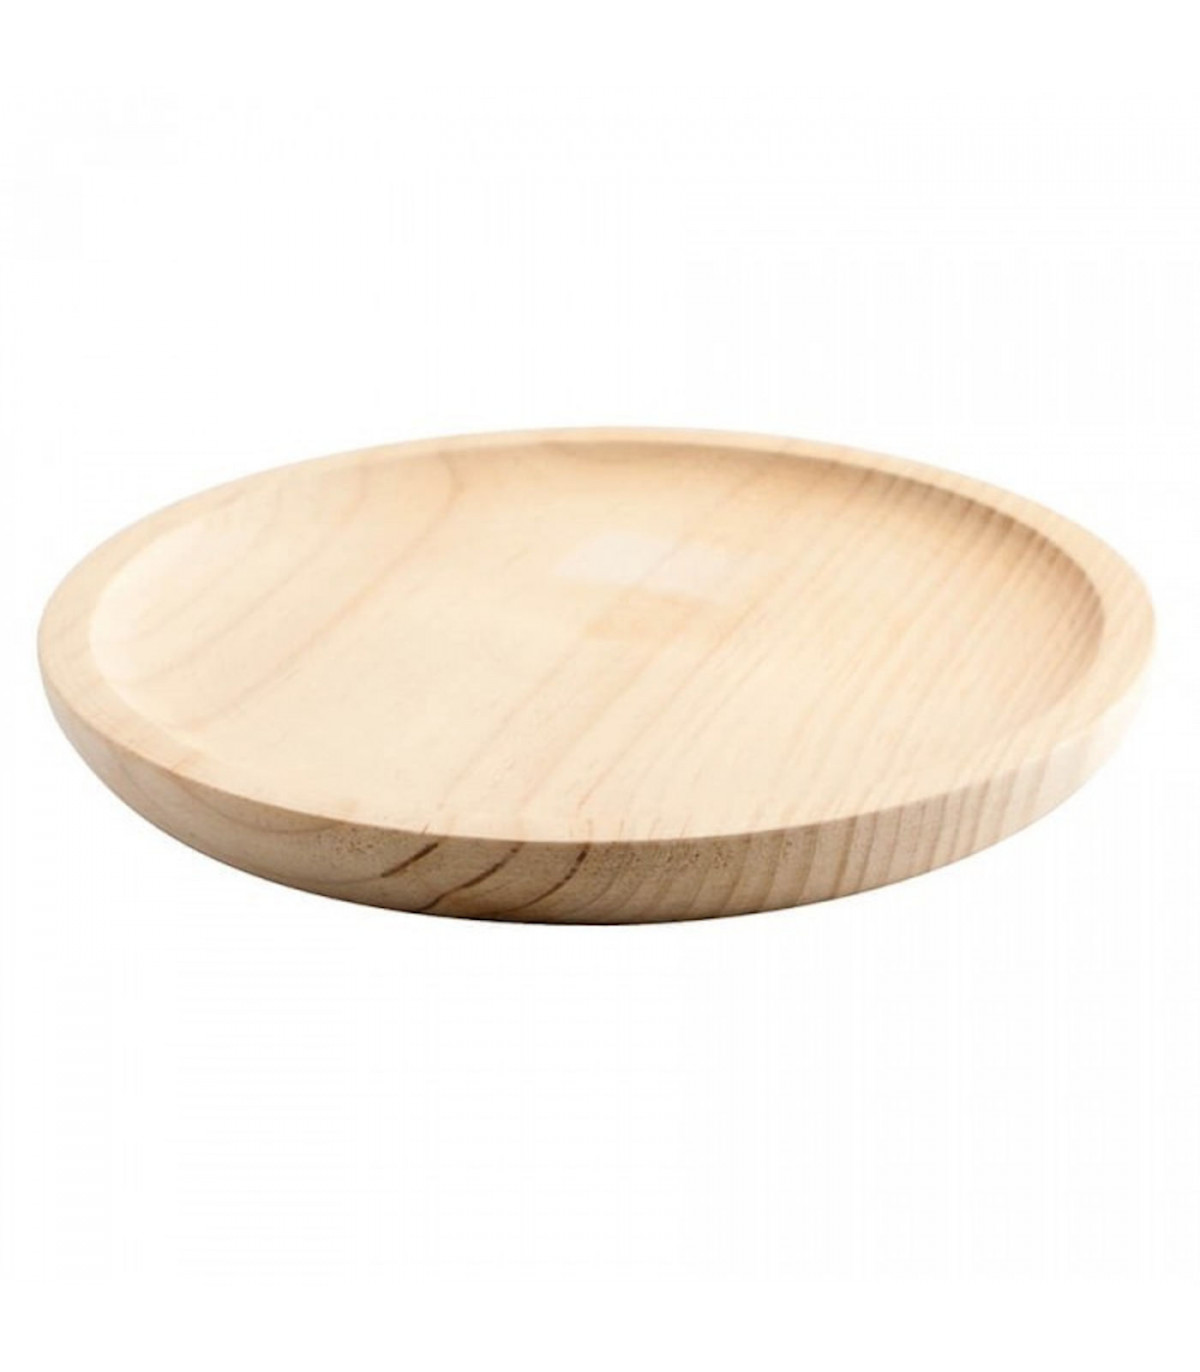 Plato de pulpo redondo de madera Artema pulpo a la gallega Plato de presentación diámetro 32 cm pizza 